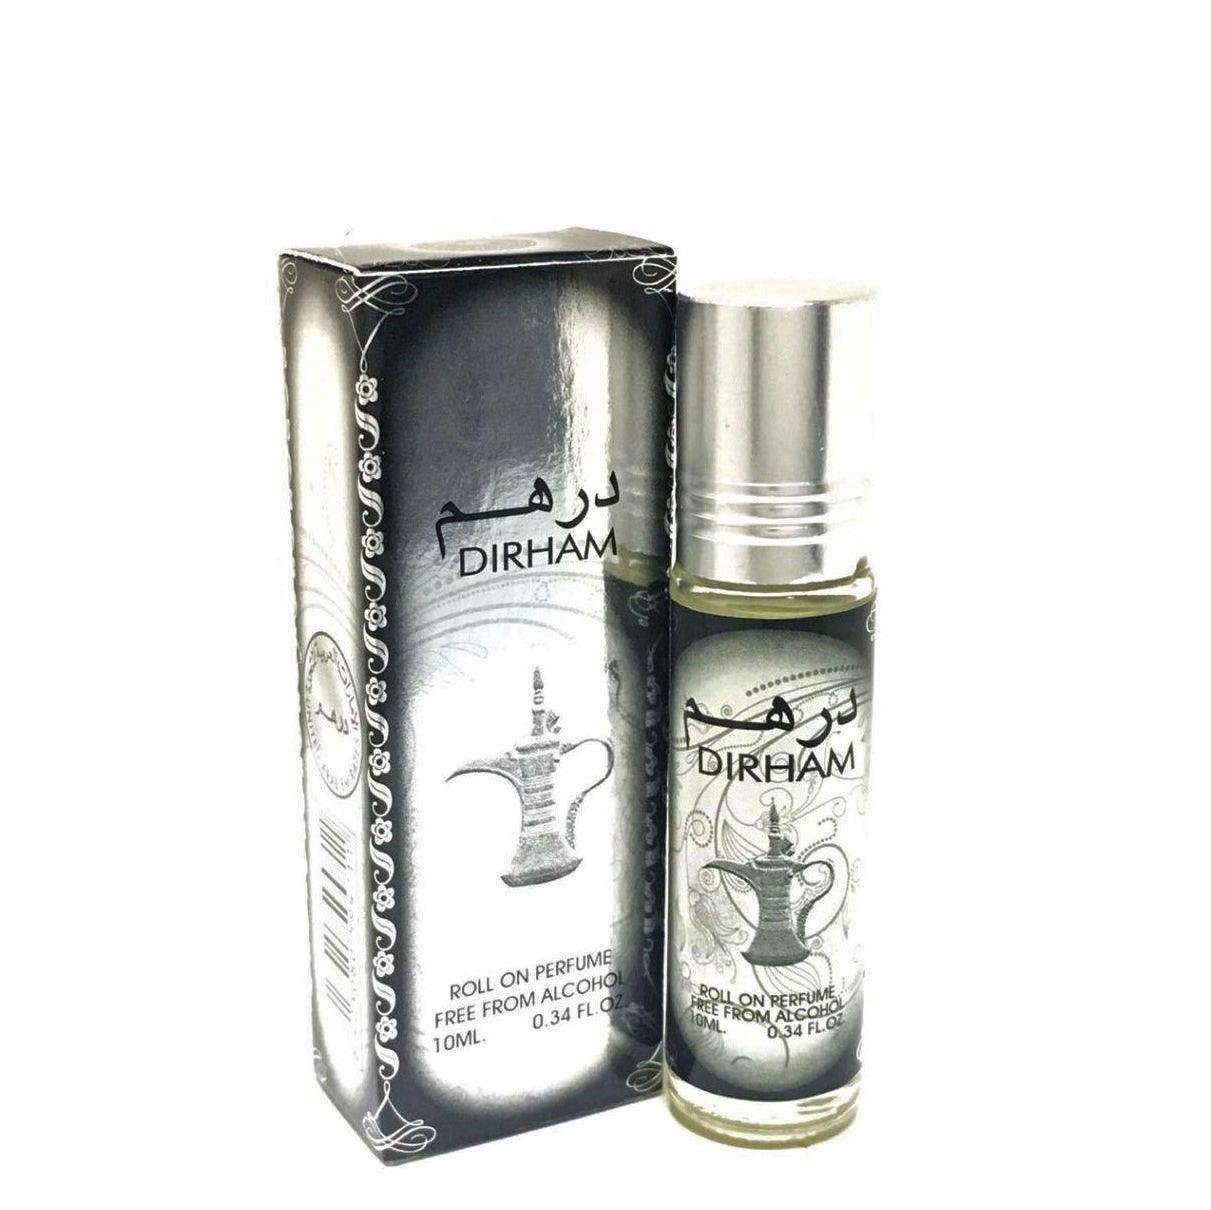 Ard Al Zaafaran Dirham 10ml roll on perfume oil - Galeria de Bijuterii